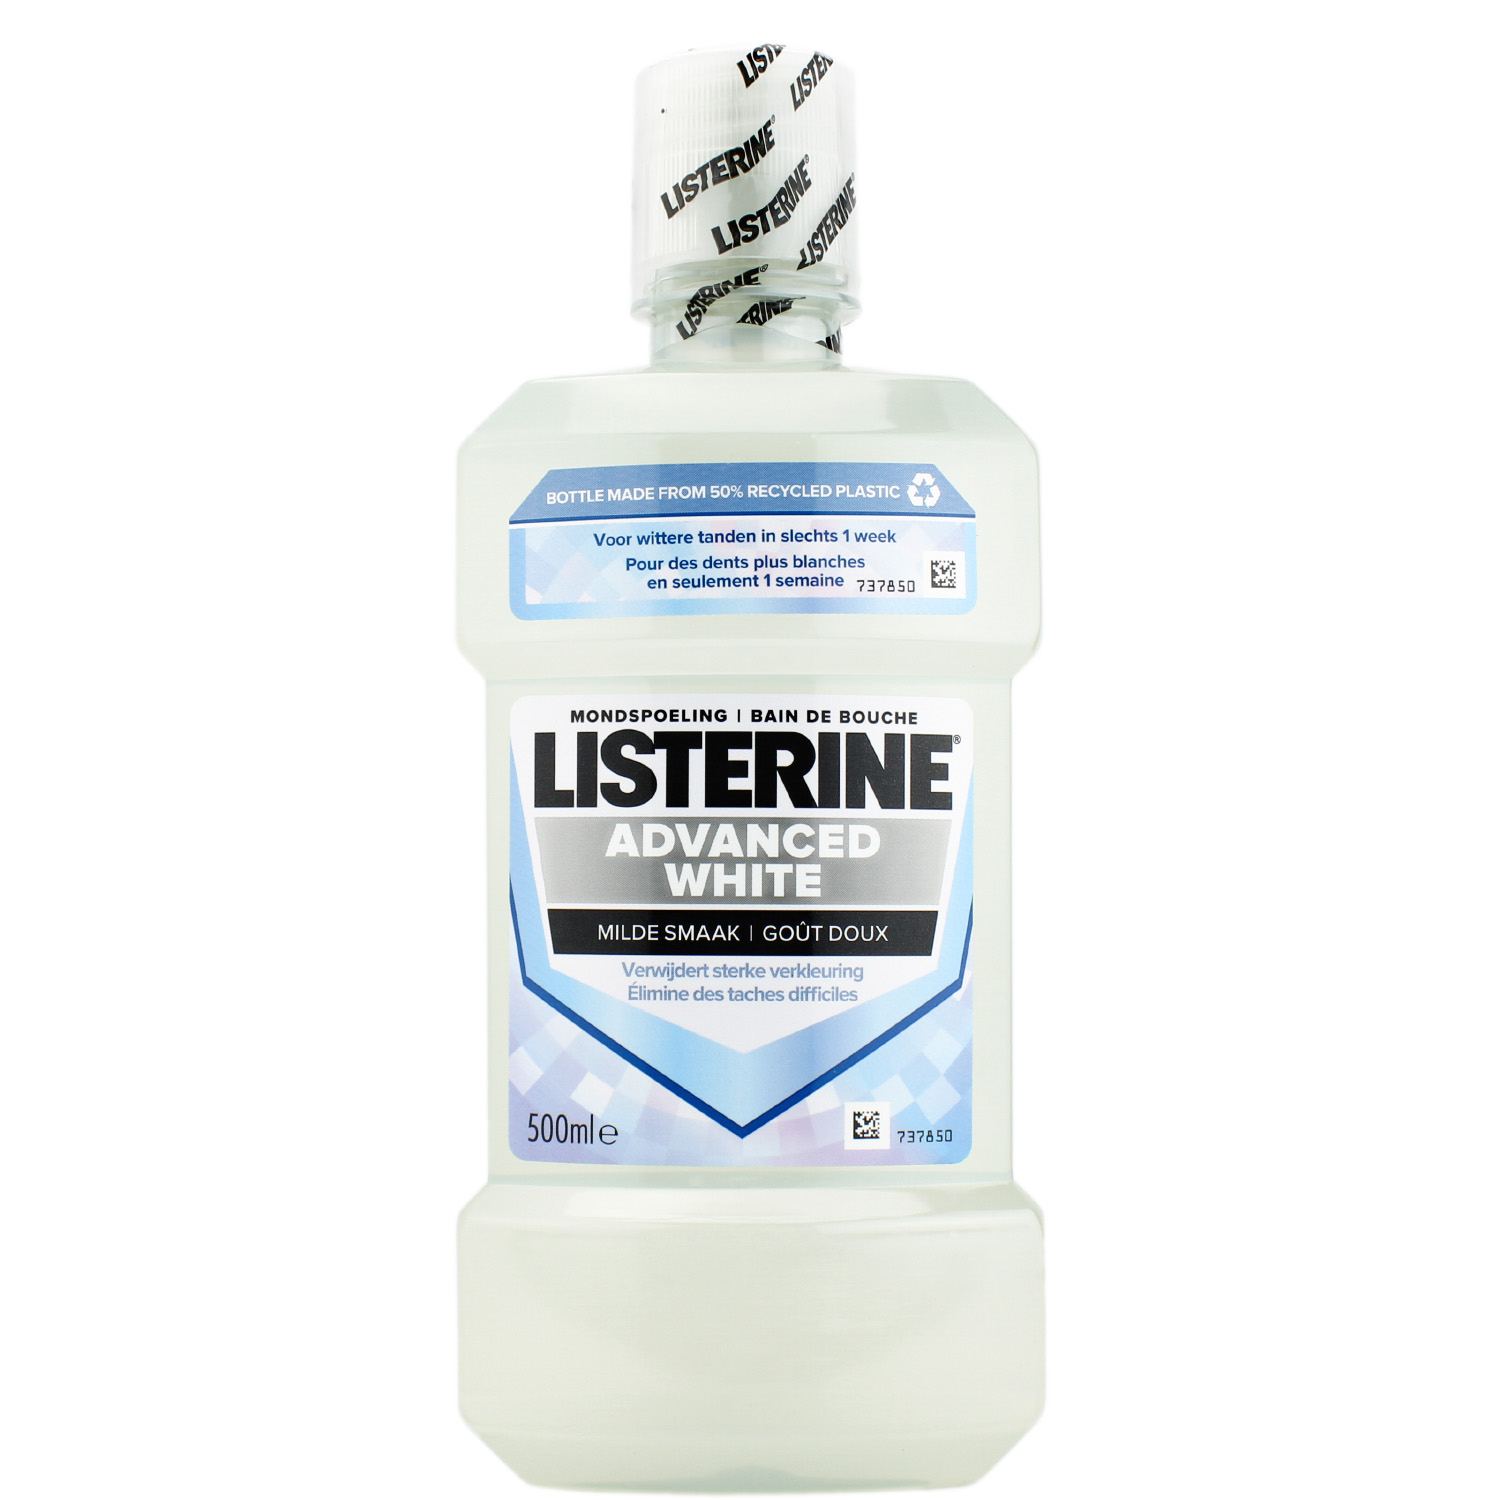 Listerine Advanced White Mundspülung Milder Geschmack 500ml